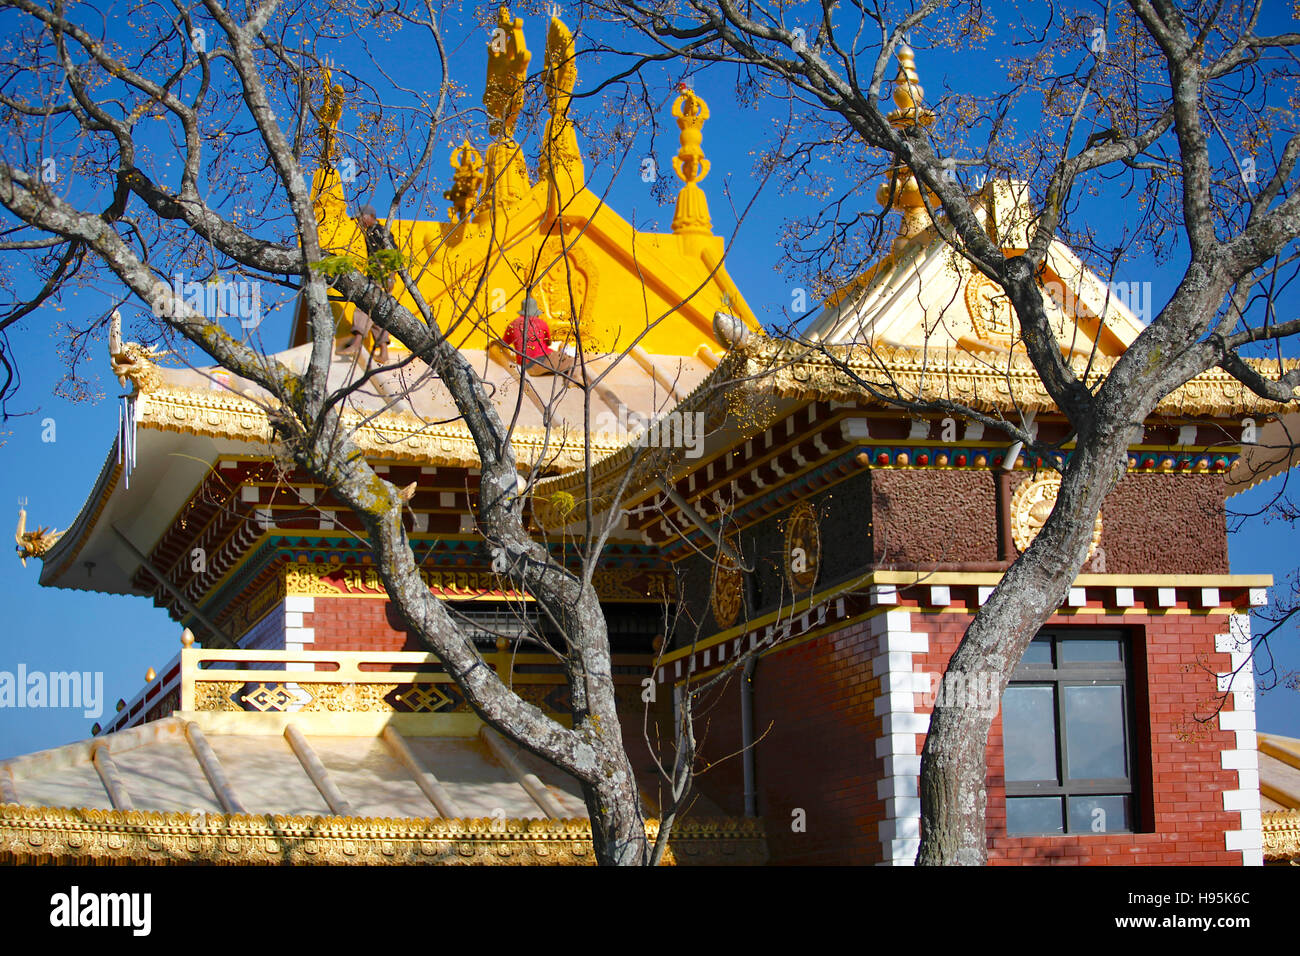 The Thrangu Tashi Yangtse Buddhist monastery in Namo Buddha. Nepal. Stock Photo